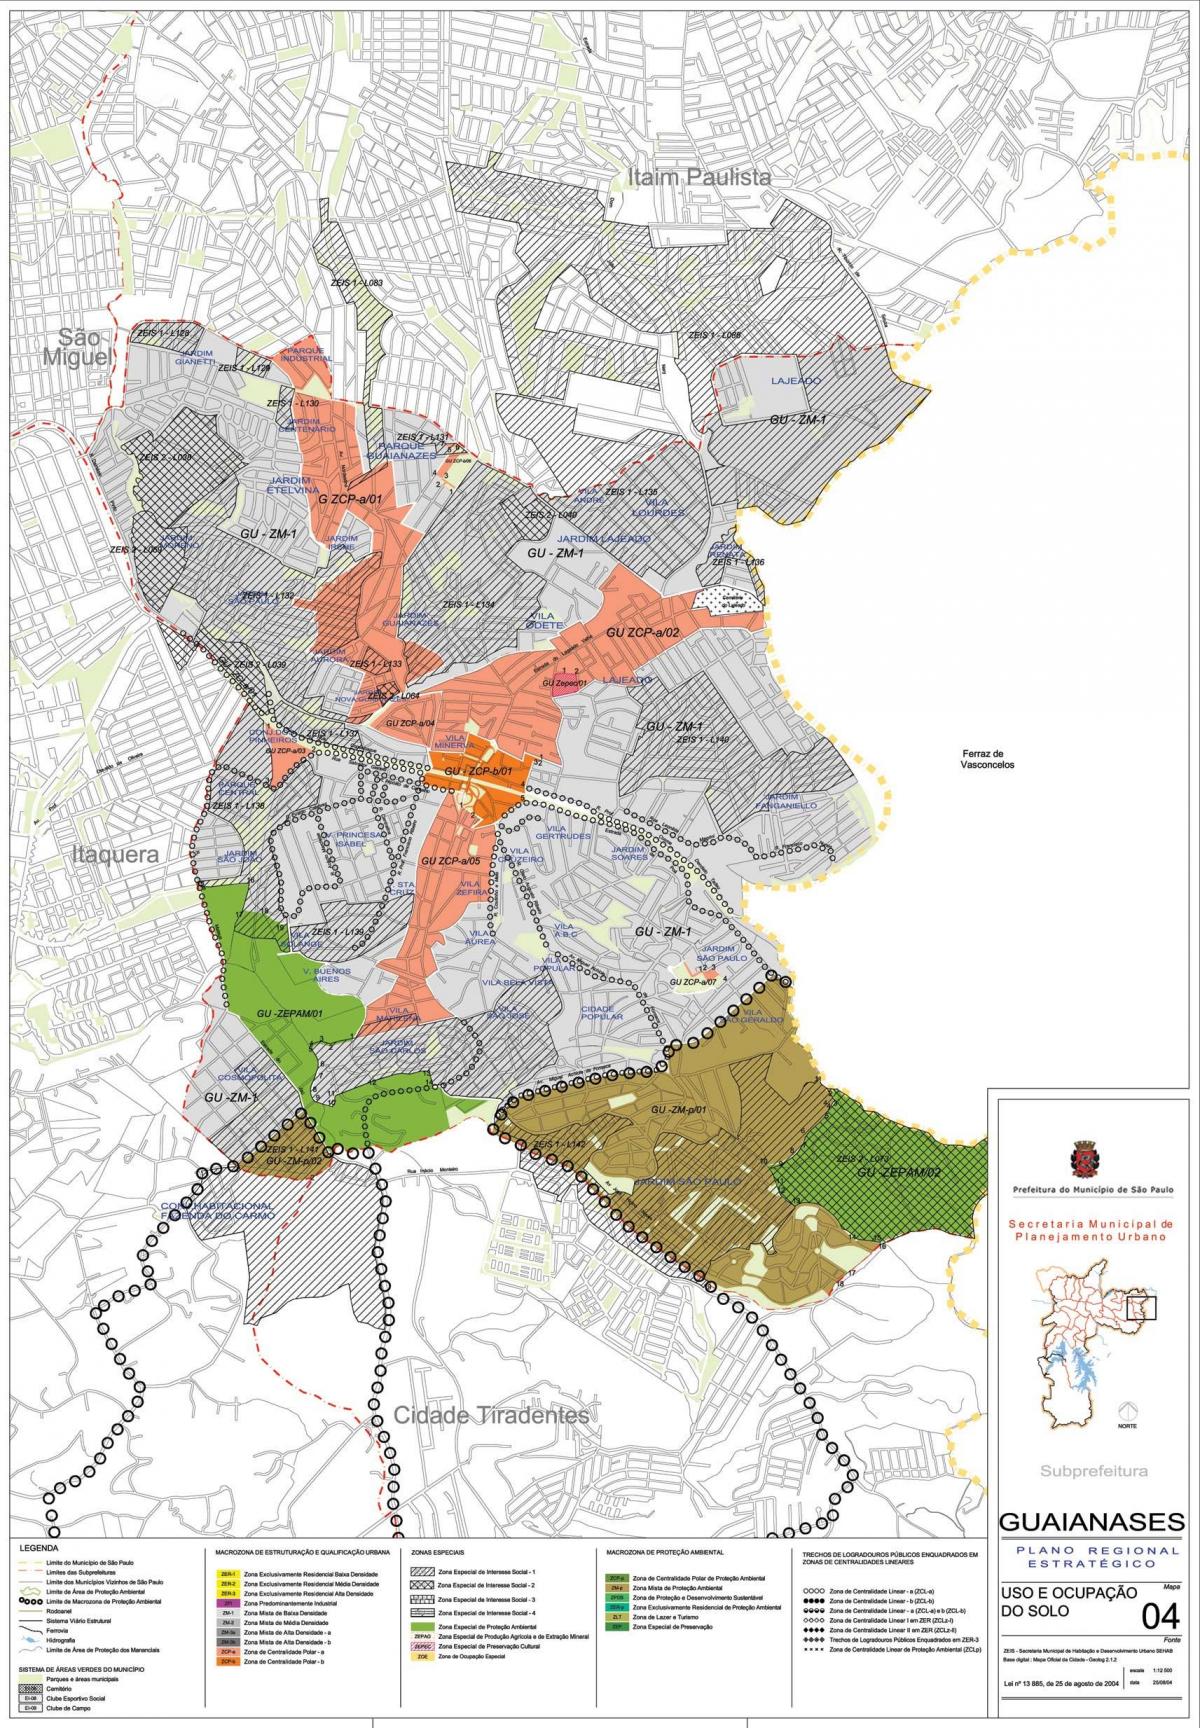 Kaart van Guaianases São Paulo - Besetting van die grond